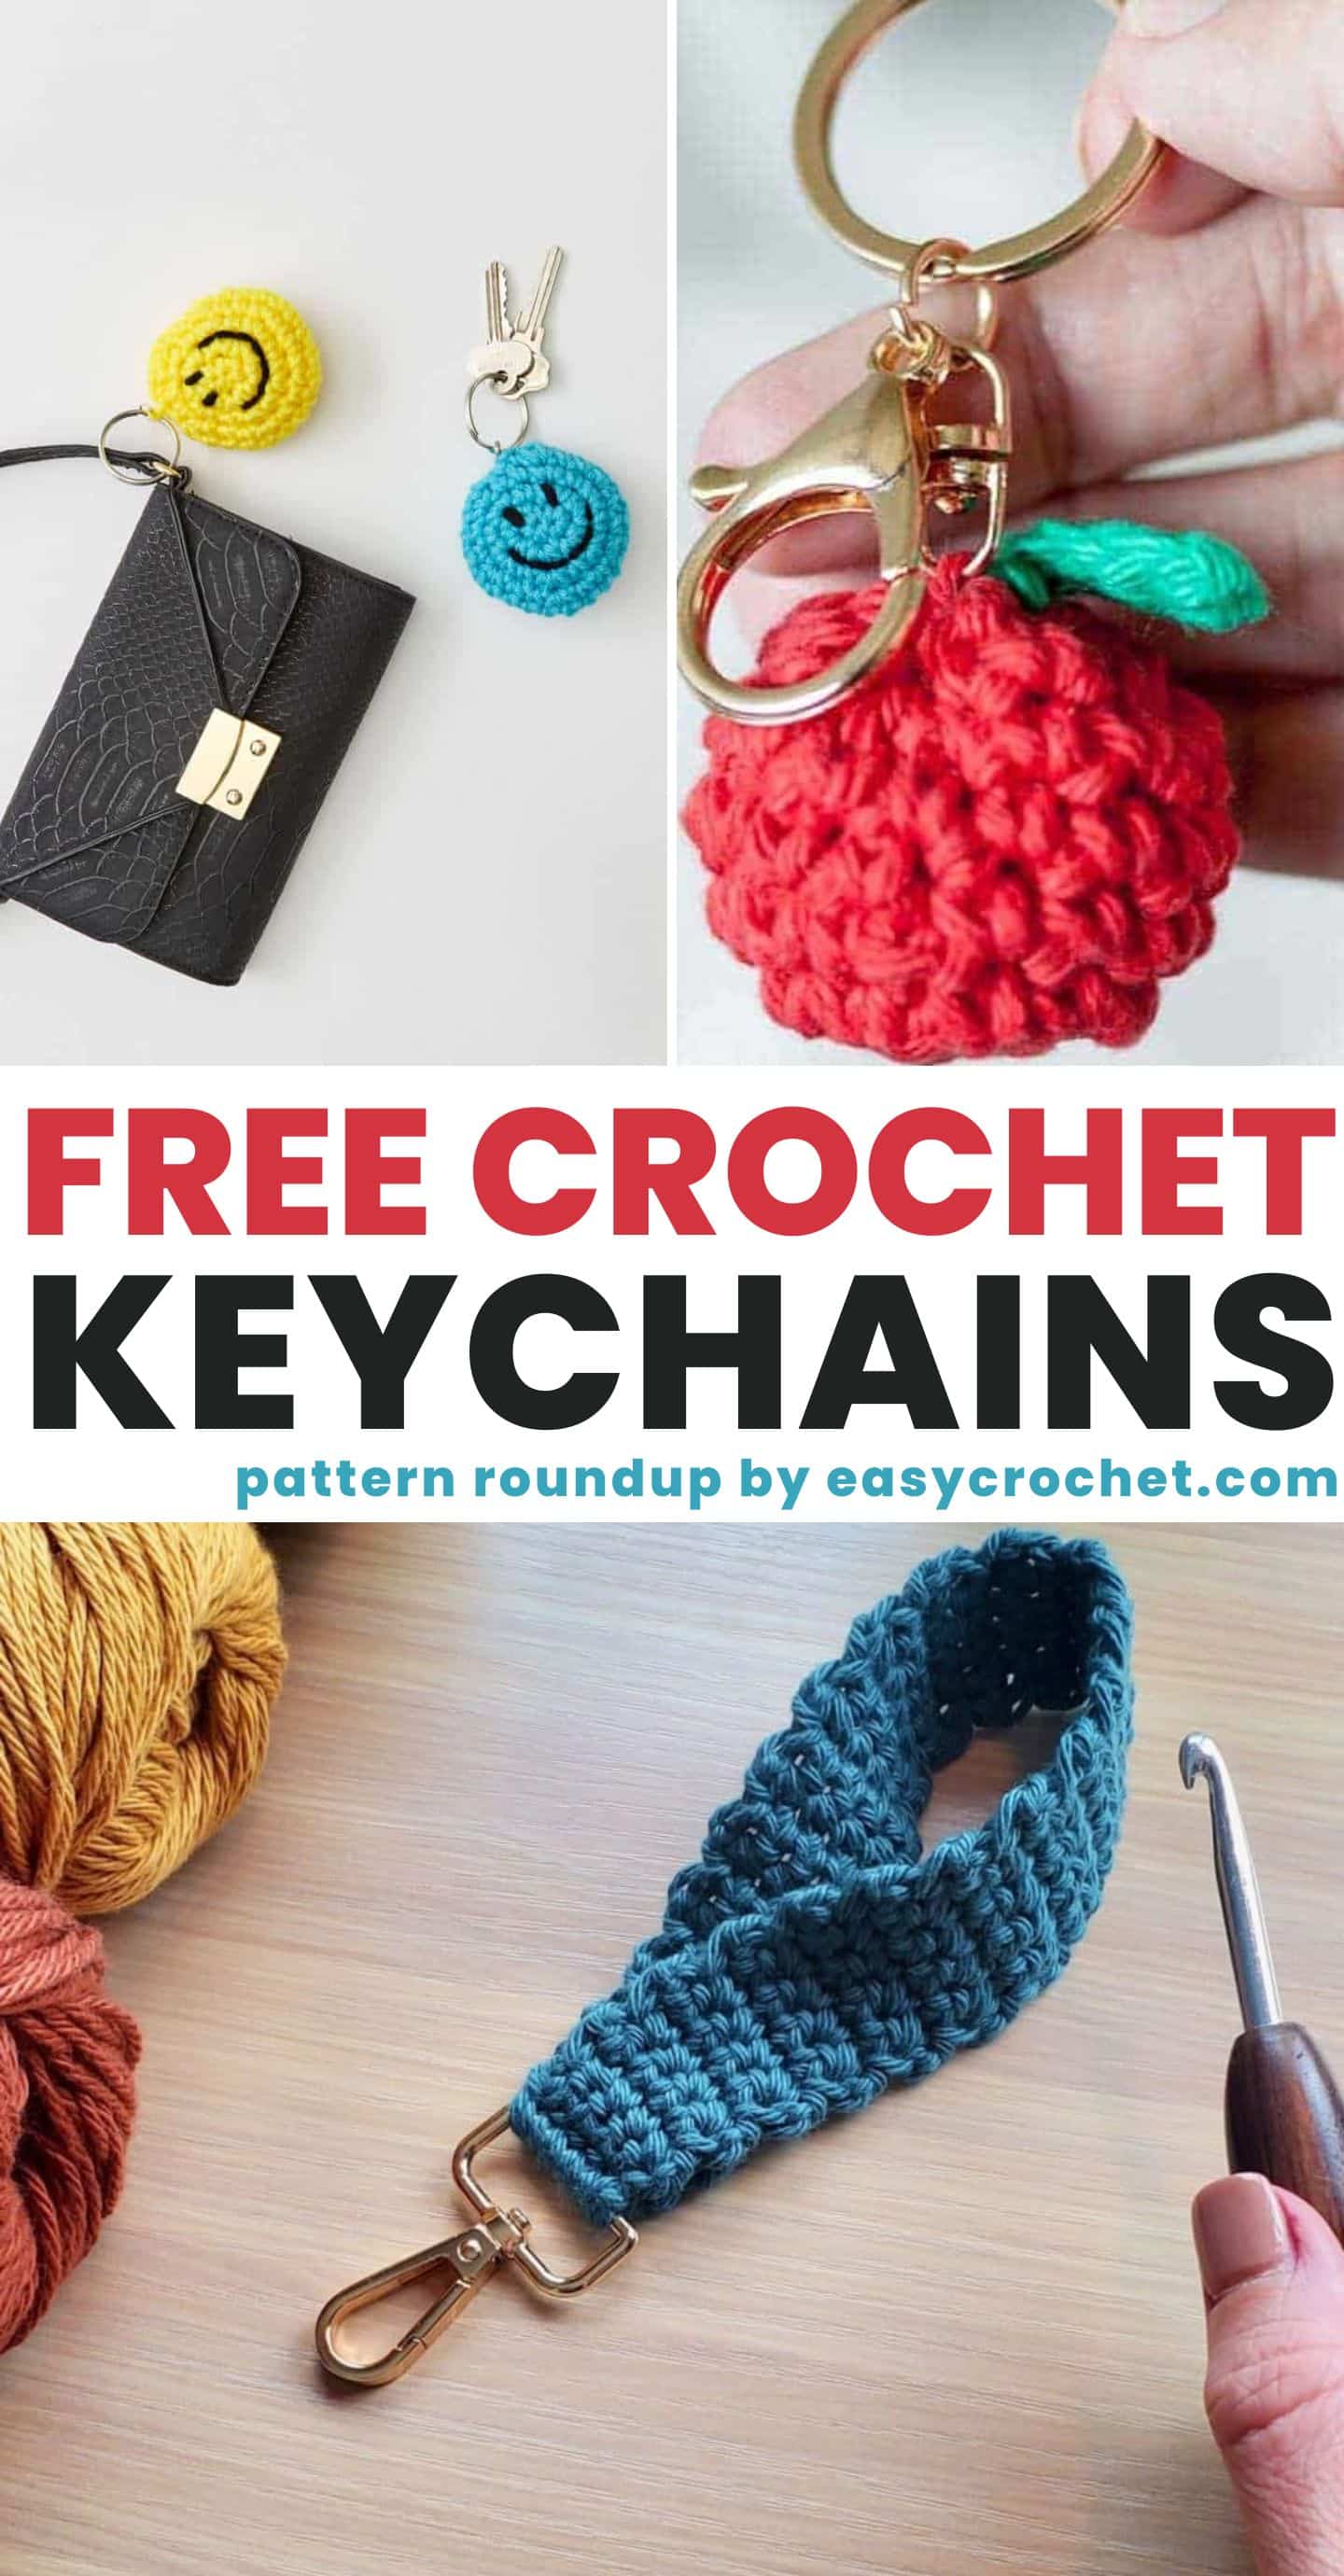 https://easycrochet.com/wp-content/uploads/2023/02/Crochet-Keychains.jpg